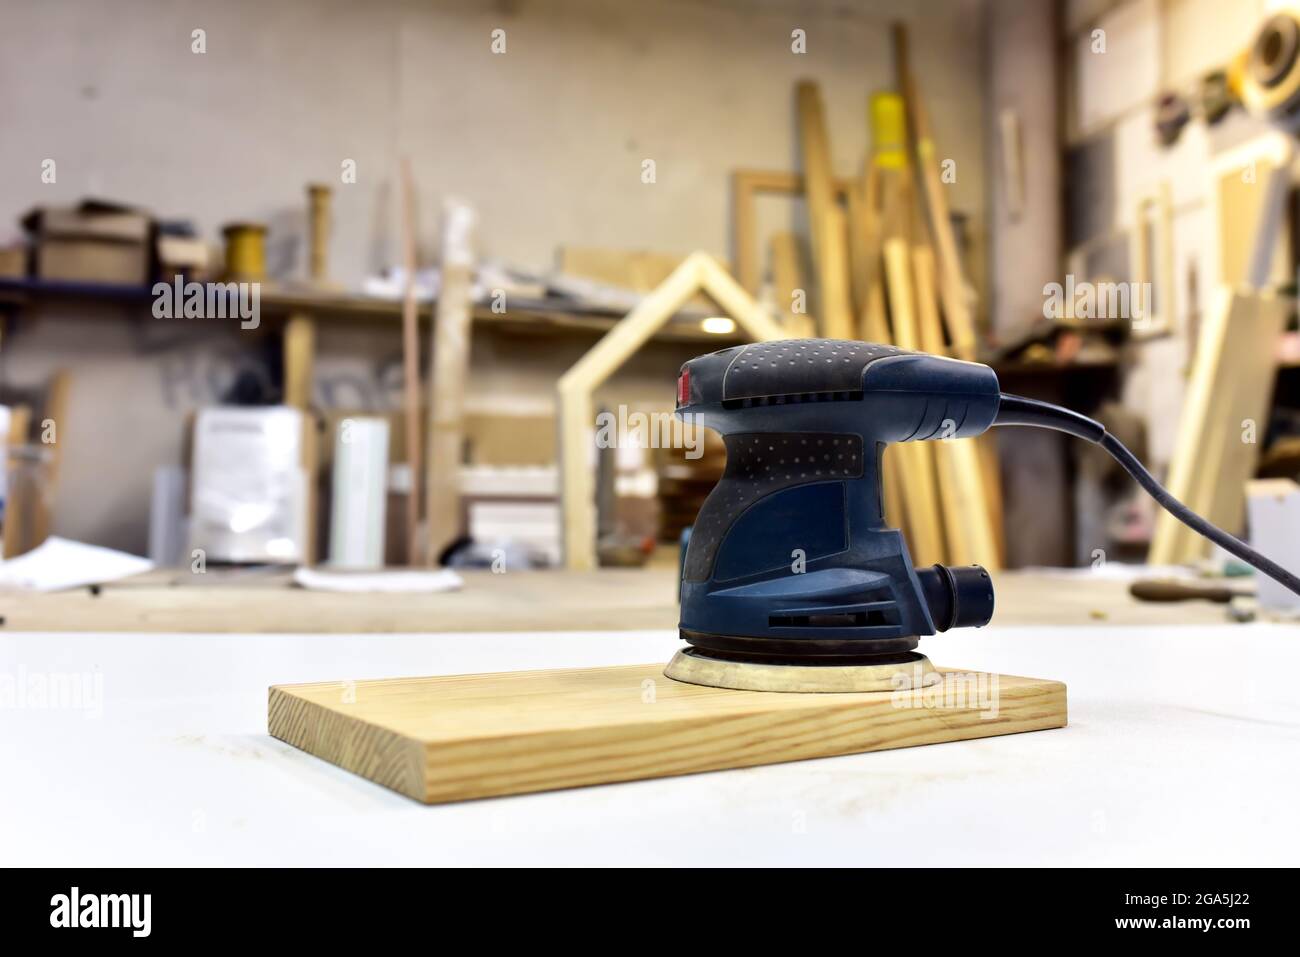 Levigatrice elettrica per legno su tavola in officina. Concetto di utensile  per la lavorazione del legno.